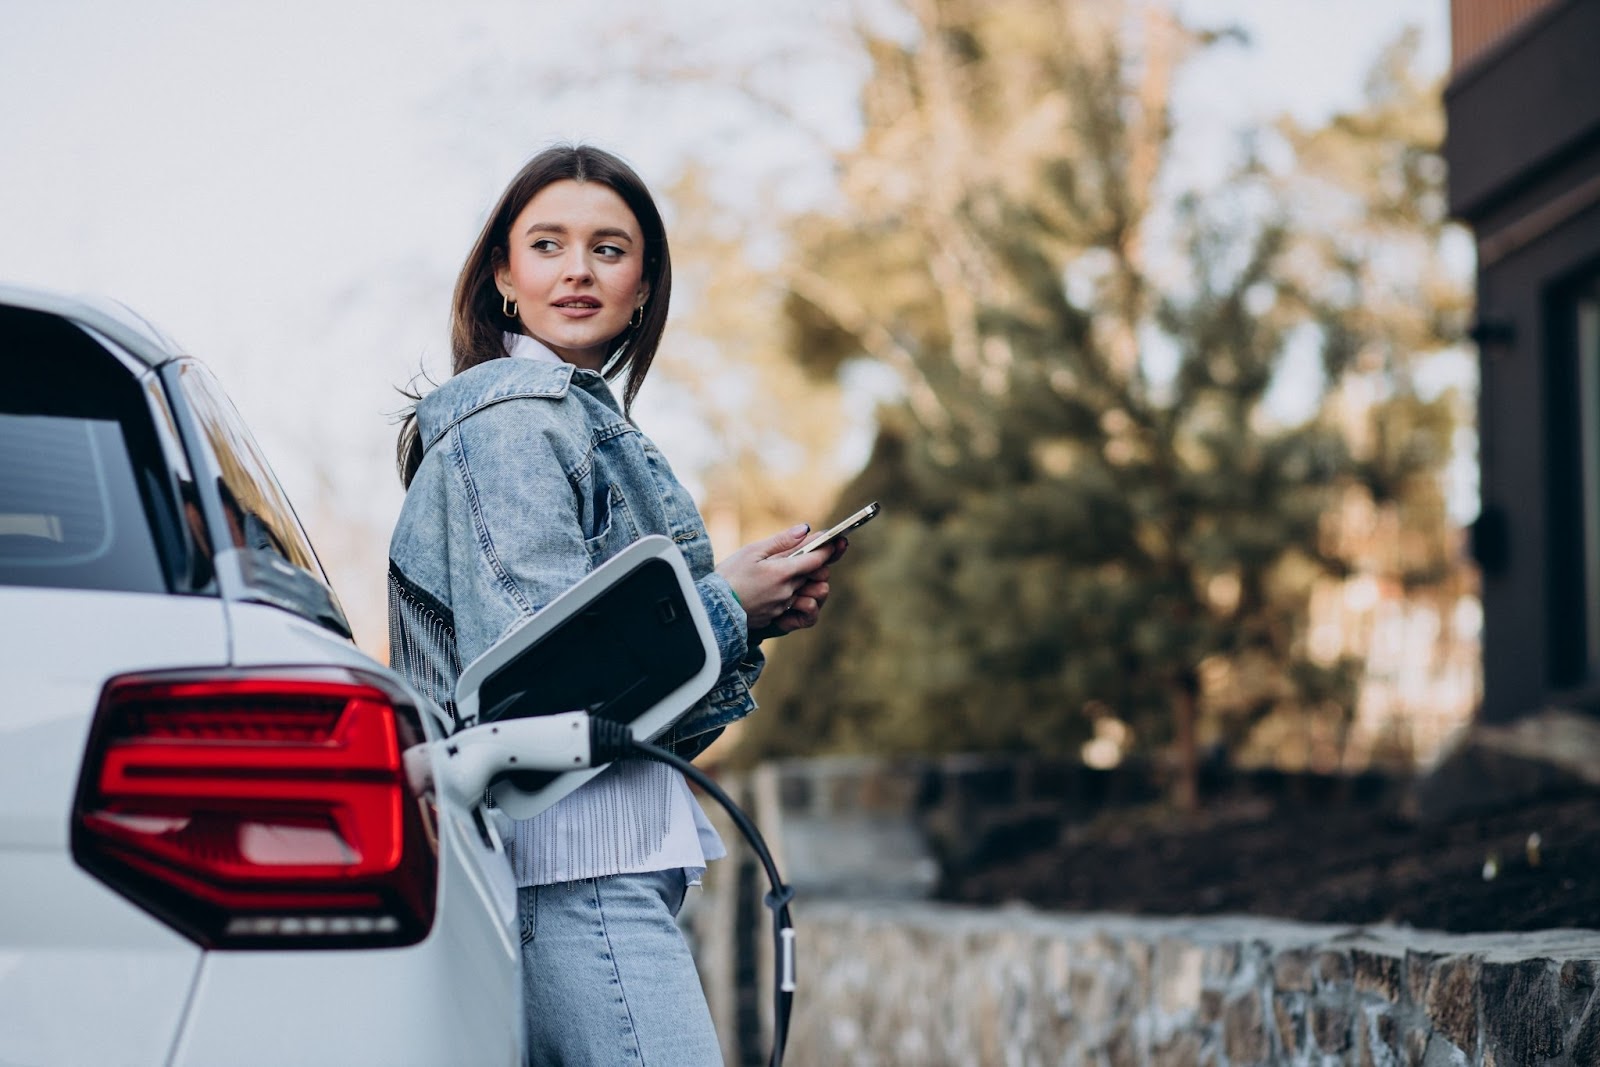 Mulher que sabe como funciona um carro elétrico, aguardando ao lado de seu veículo enquanto aguarda o processo de recarga. Ela está segurando um celular e olhando para o horizonte.